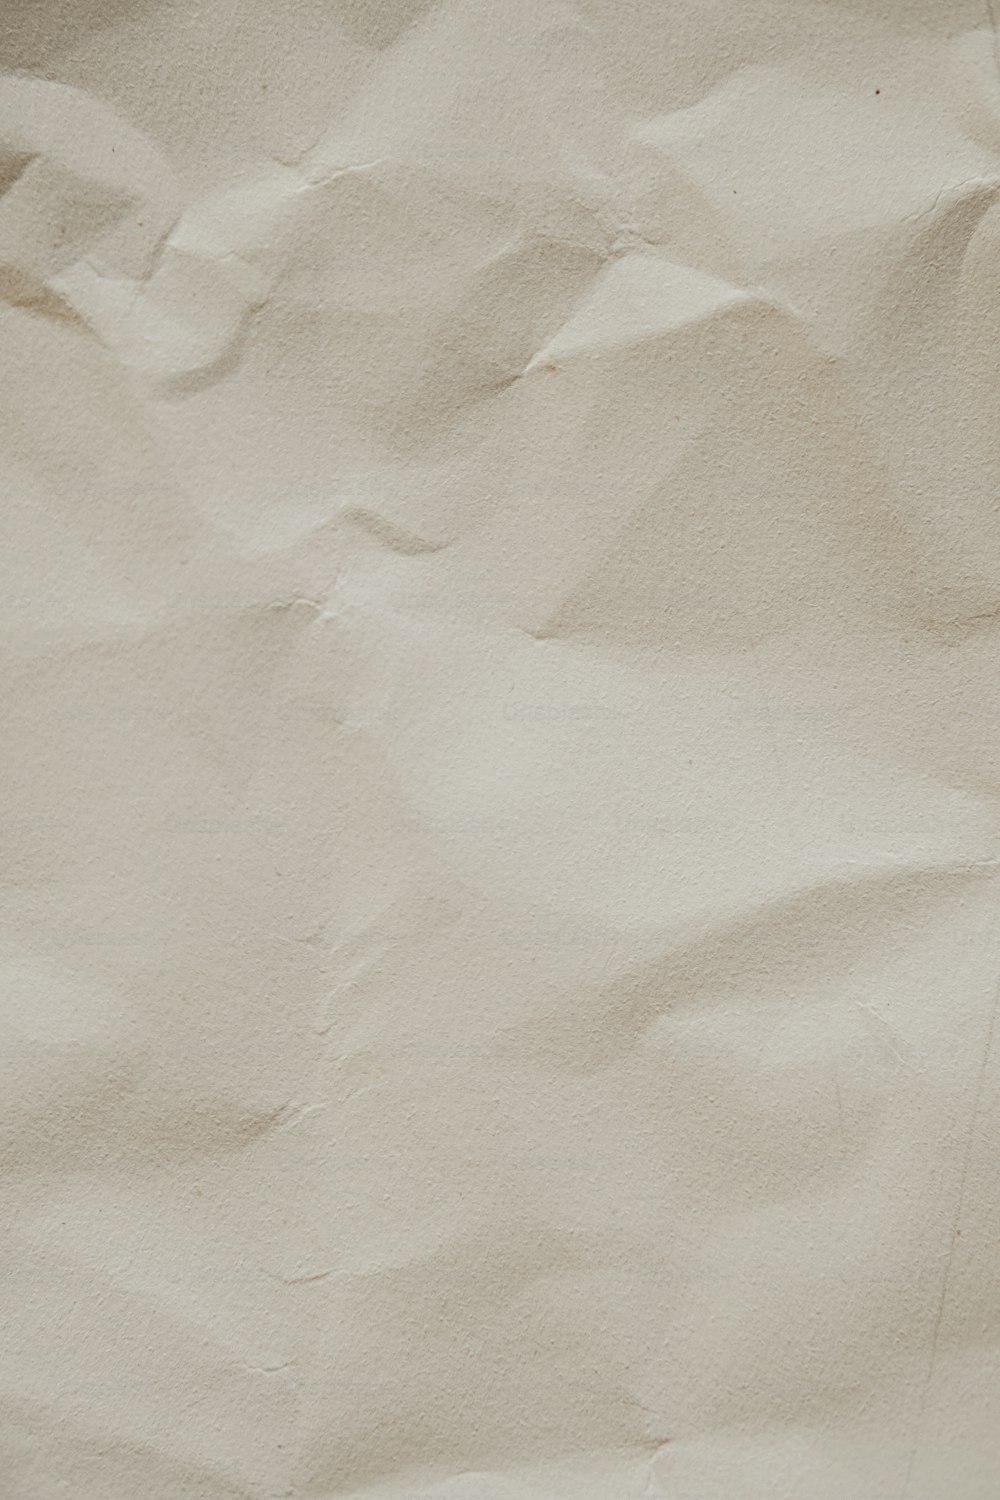 um telefone celular deitado em cima de um pedaço de papel